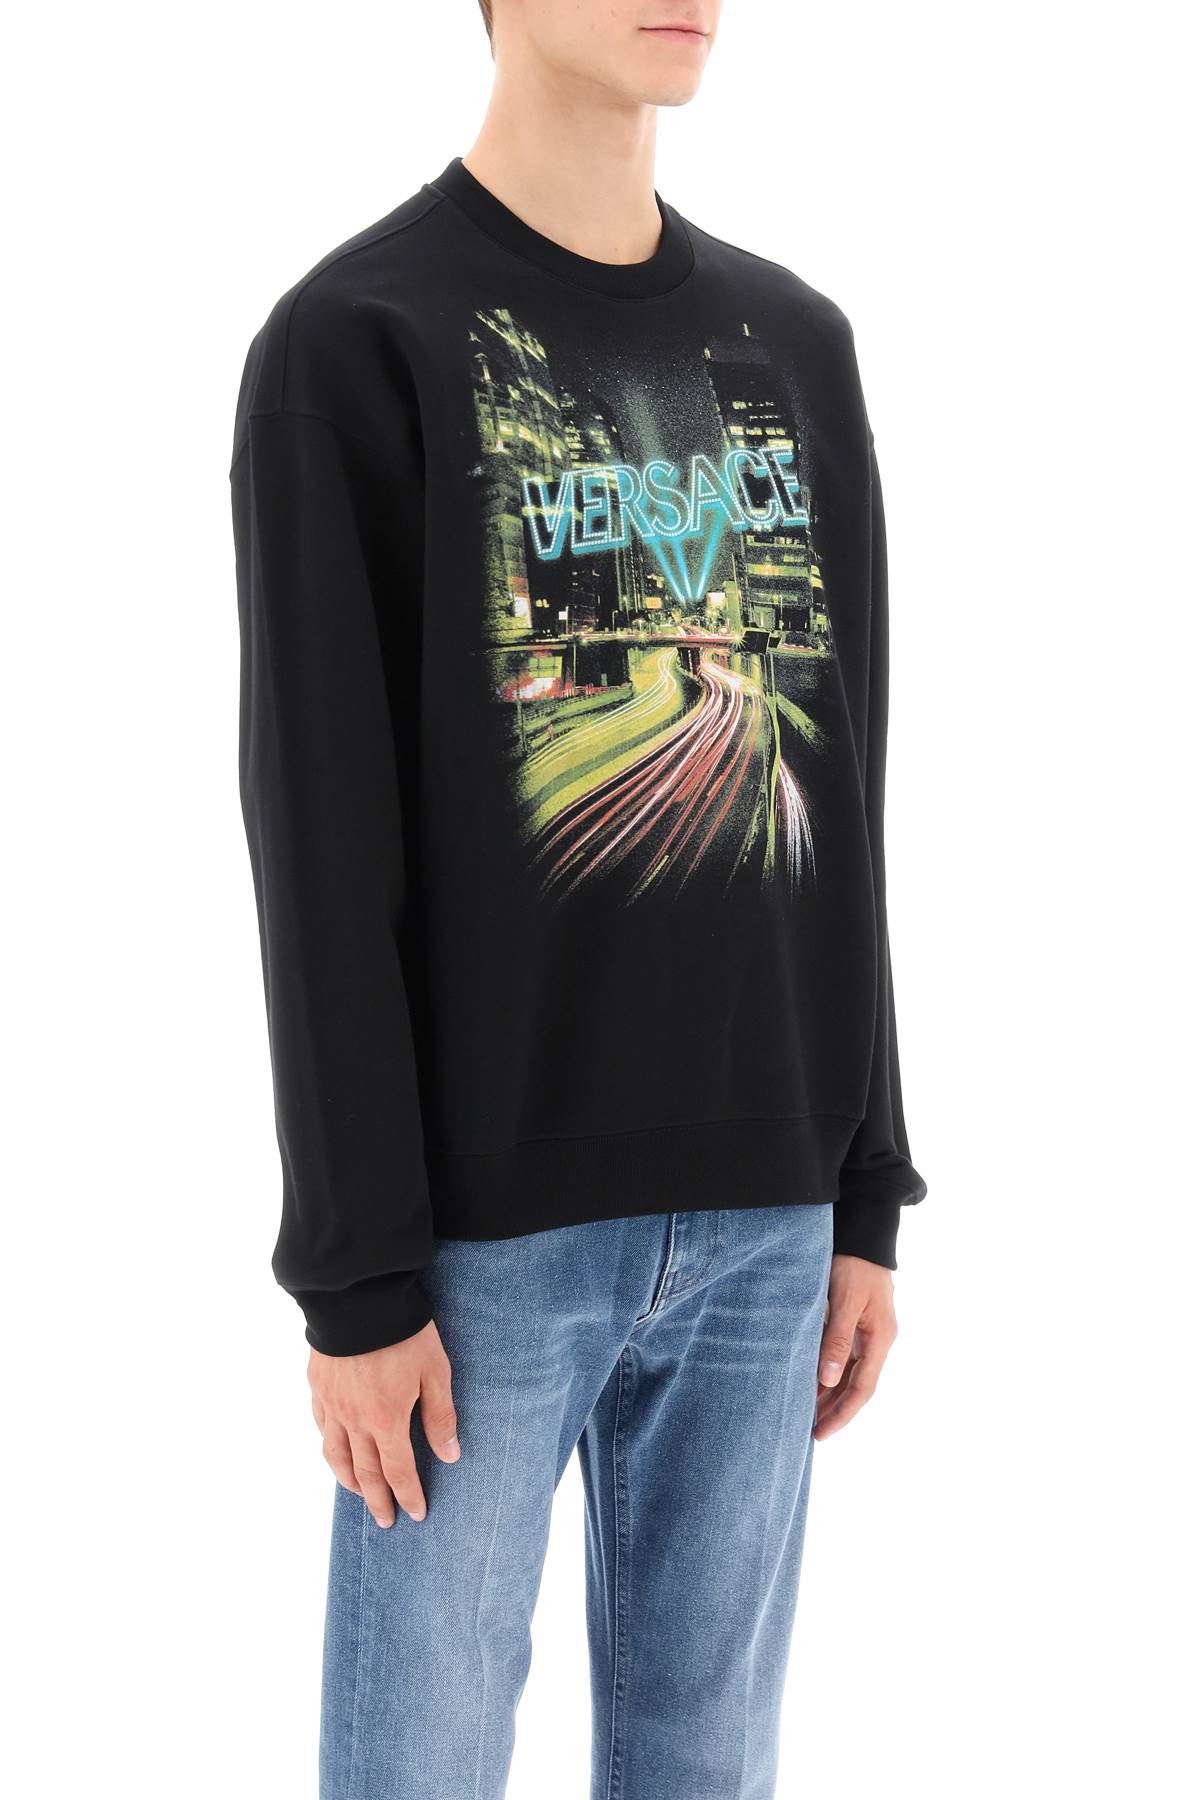 Versace crew-neck sweatshirt with city lights print-1